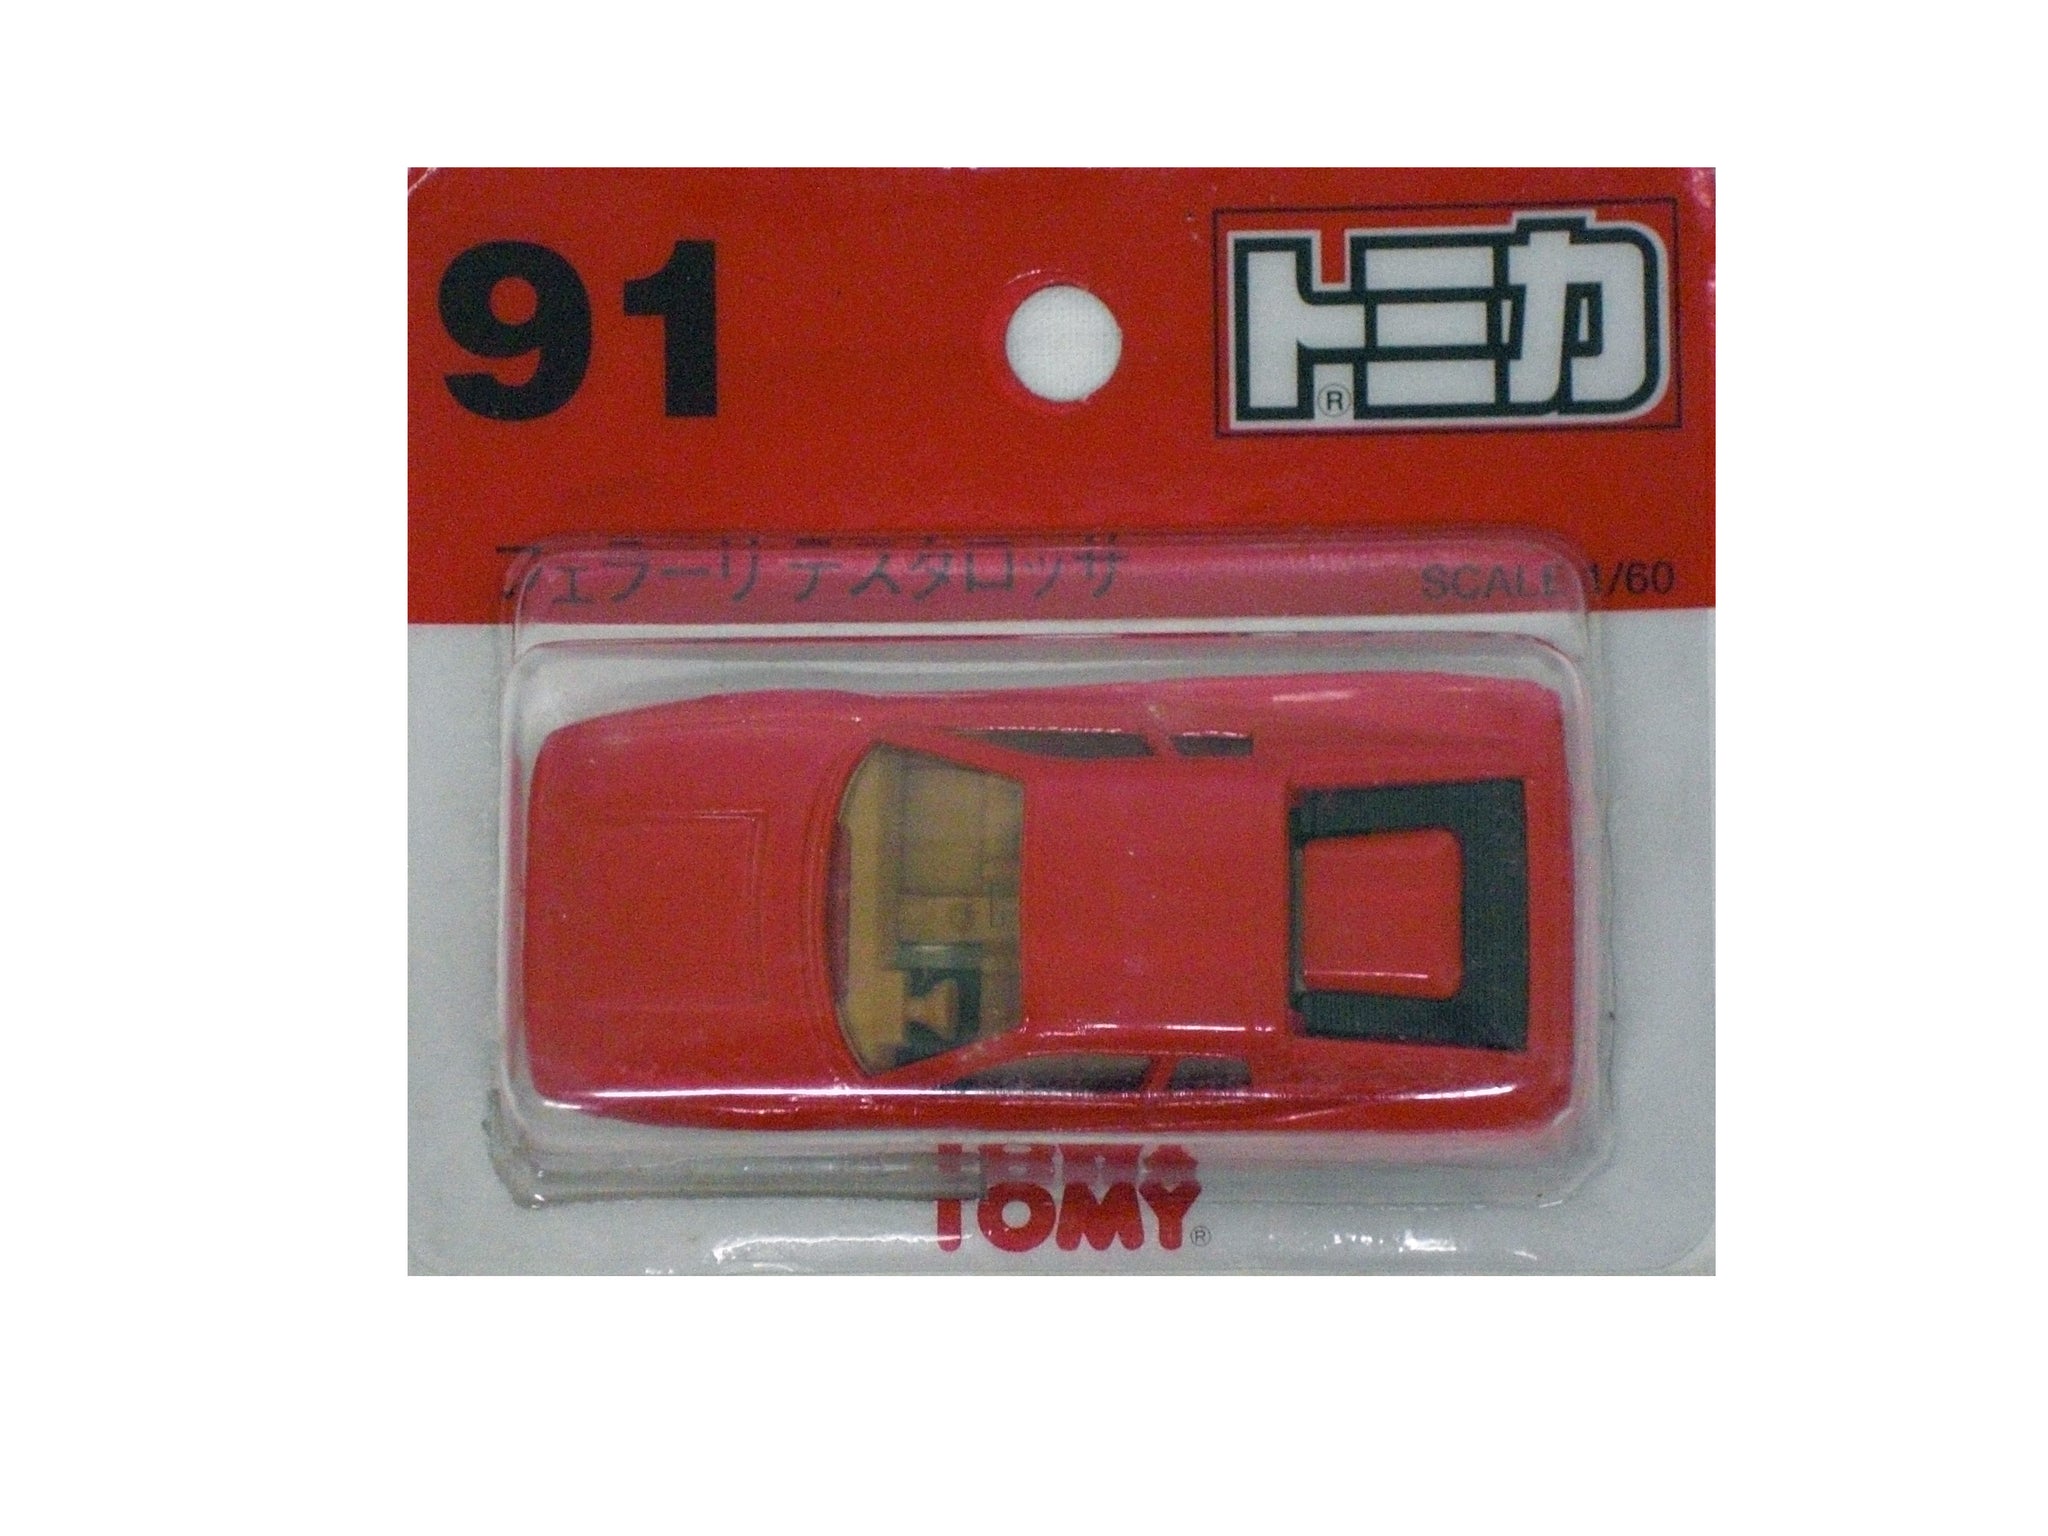 トミカ No.91 フェラーリ テスタロッサ | toyplanet online shop